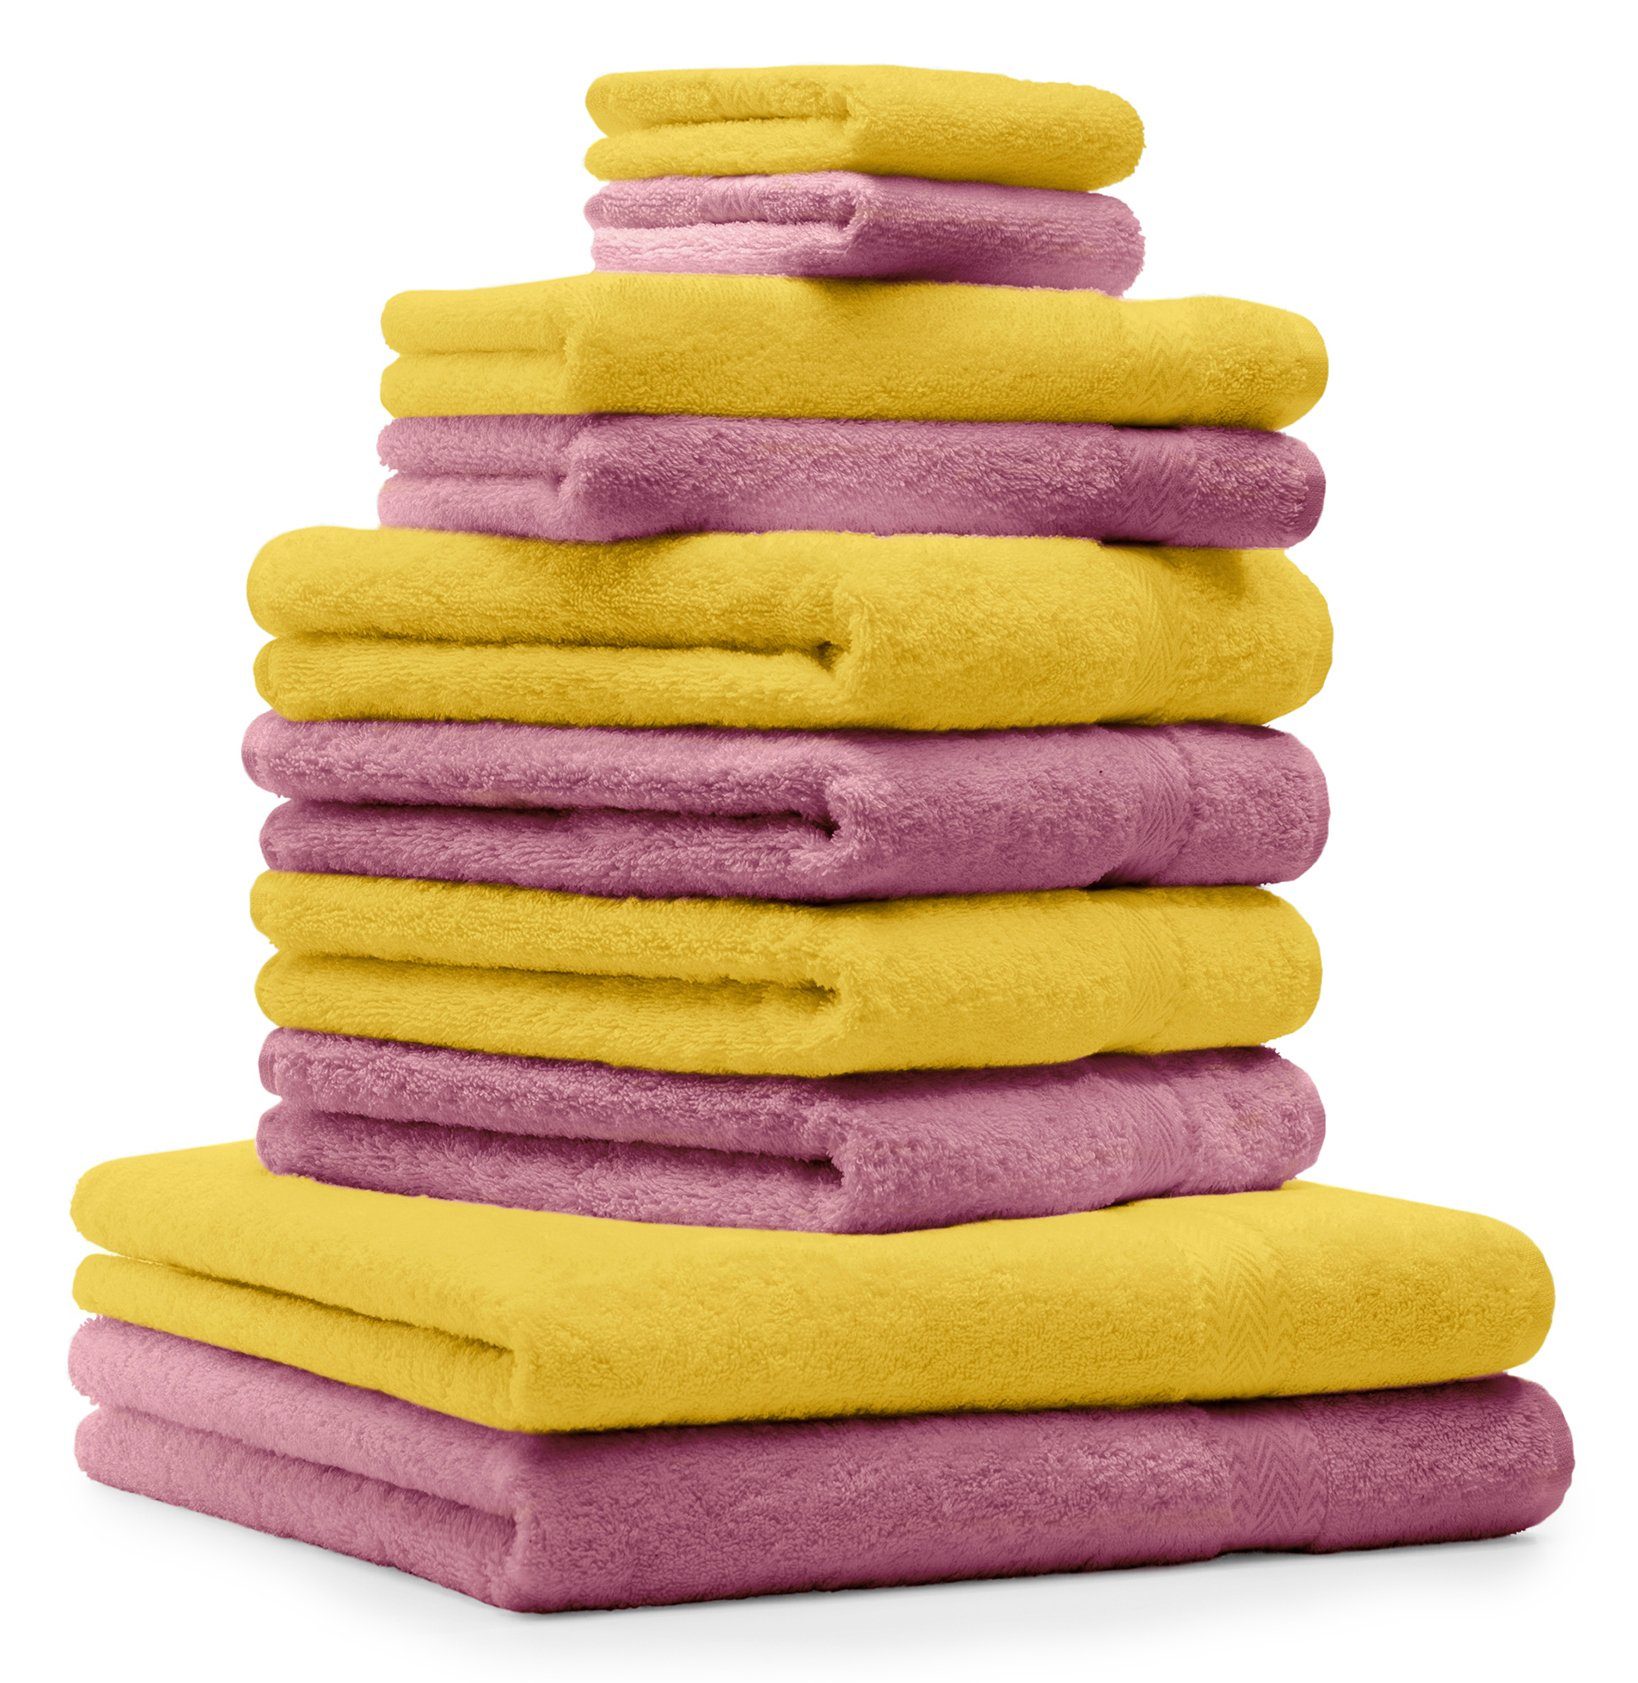 Betz Handtuch Set 10-TLG. Handtuch-Set Premium Farbe Gelb & Altrosa, 100% Baumwolle, (10-tlg)